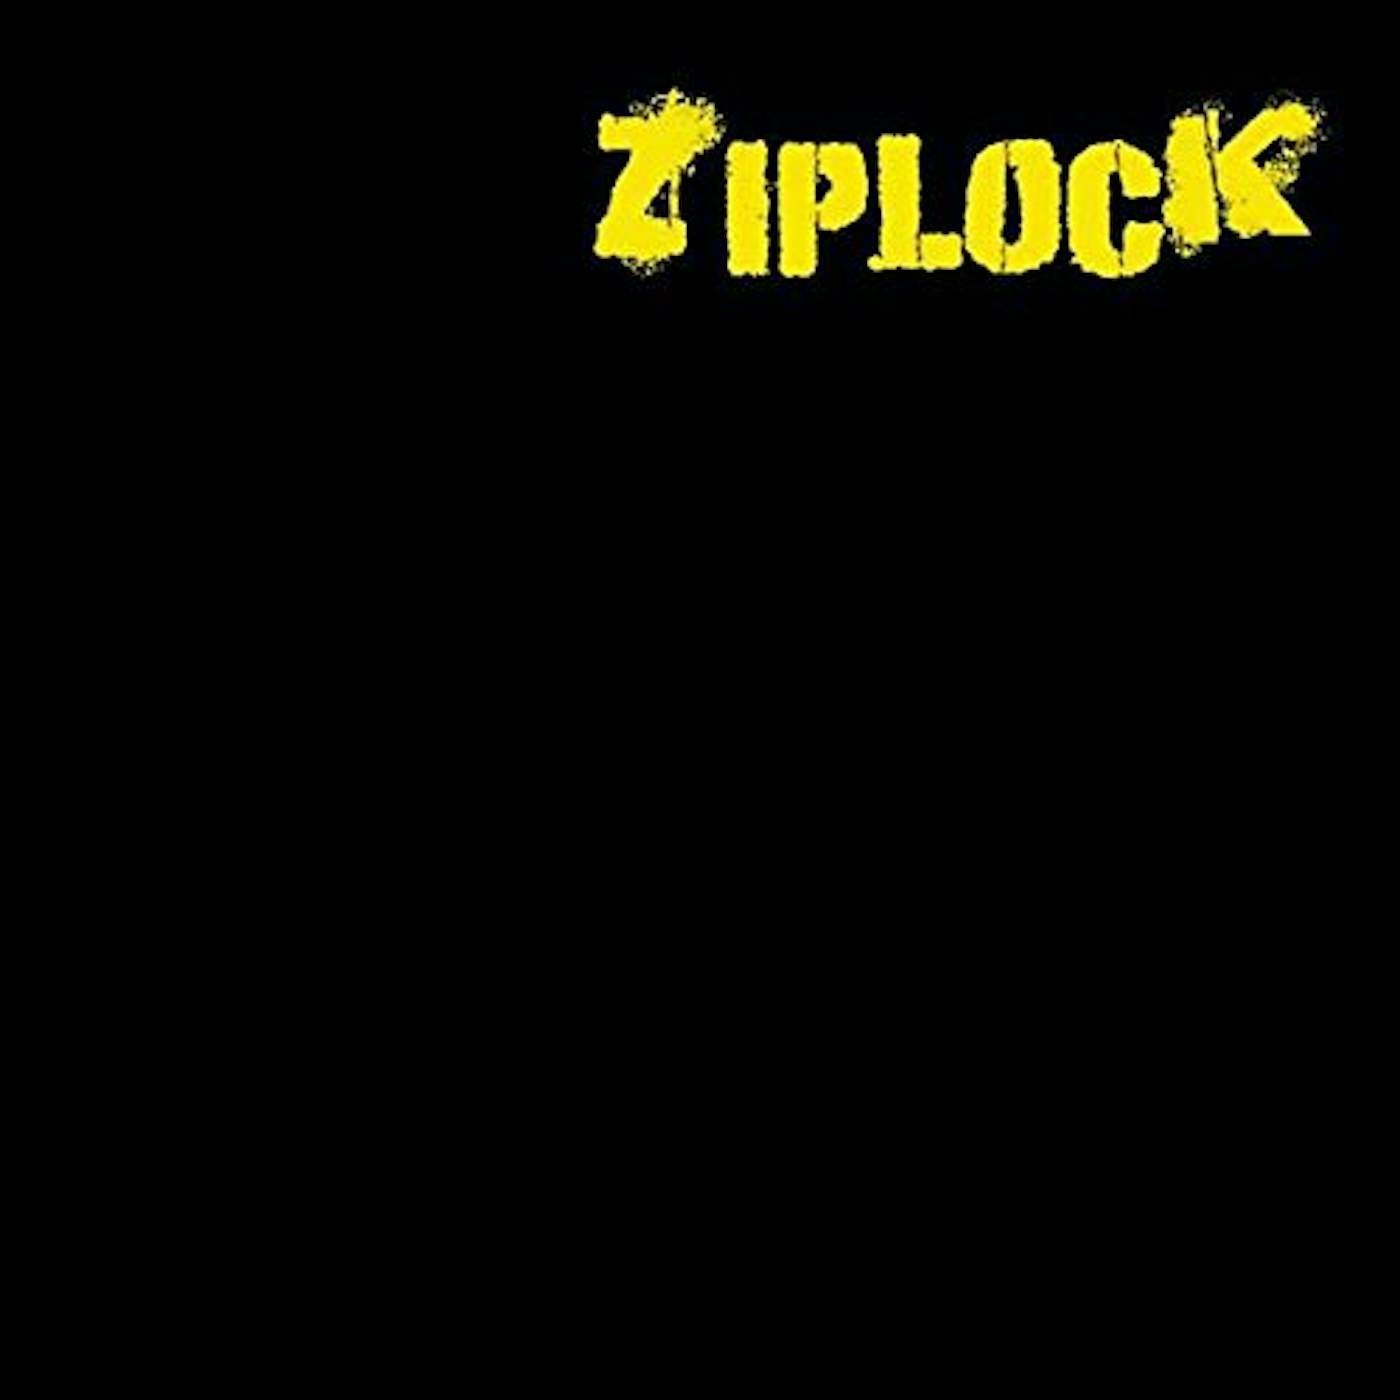 Ziplock Vinyl Record